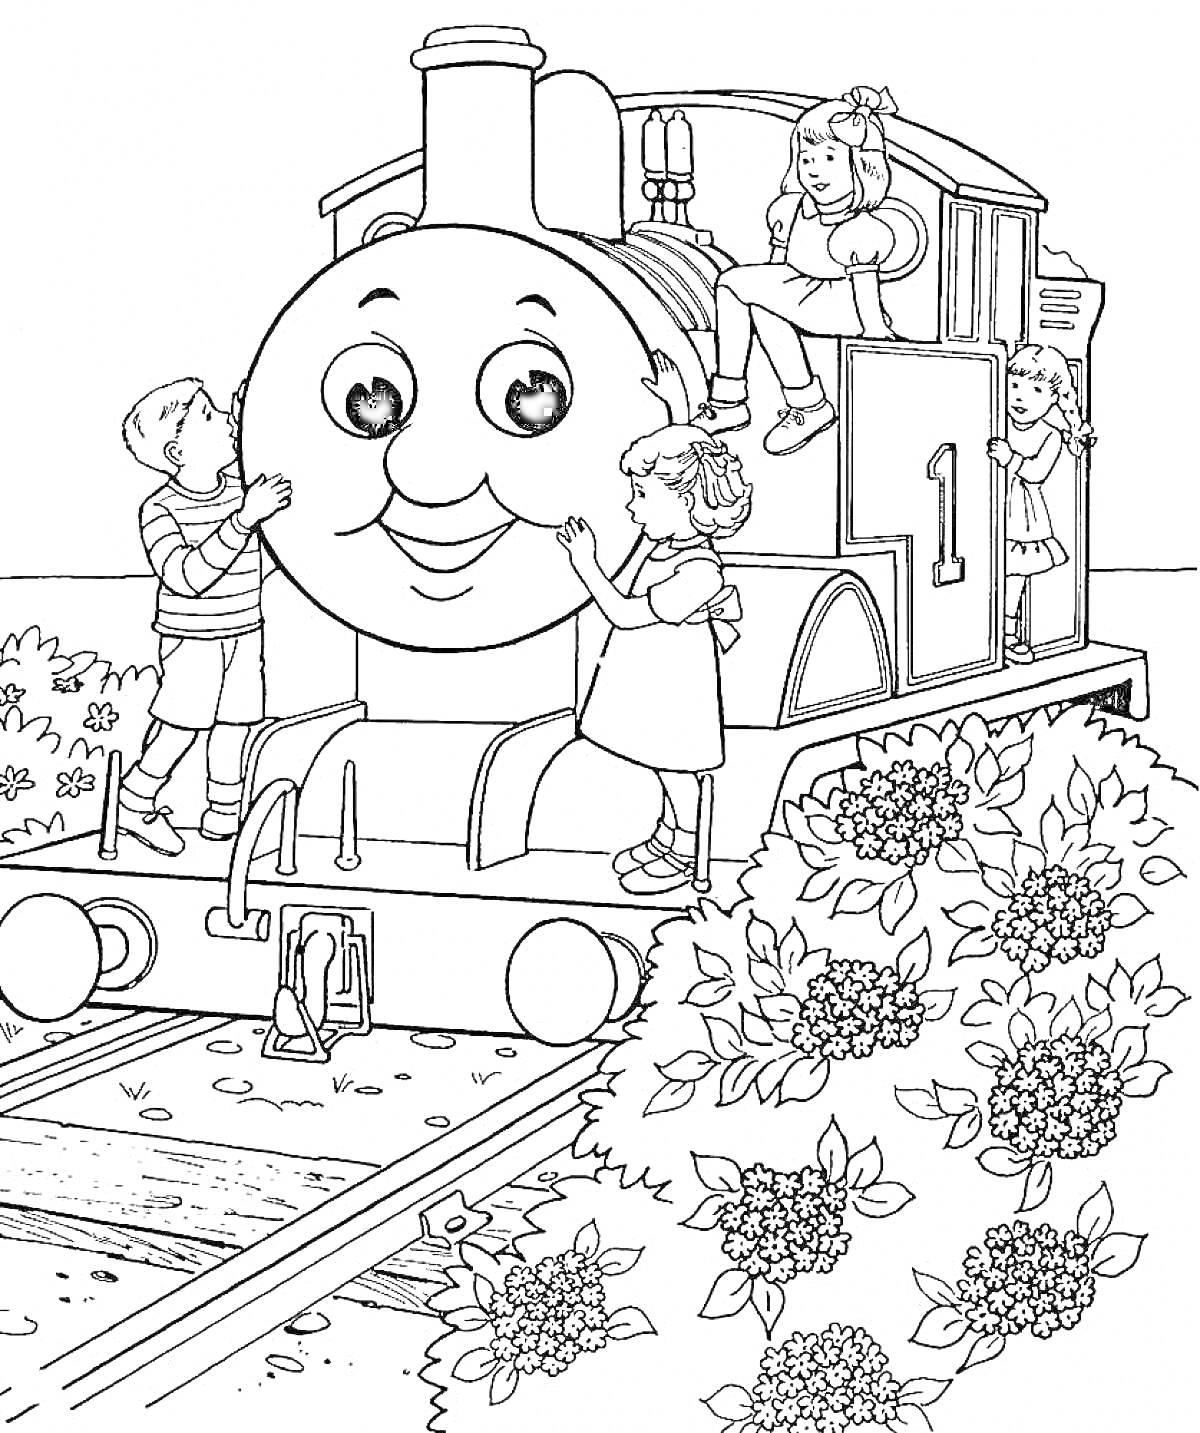 Раскраска Томас и дети, стоящие возле паровоза с номером 1, на фоне кустов c цветами